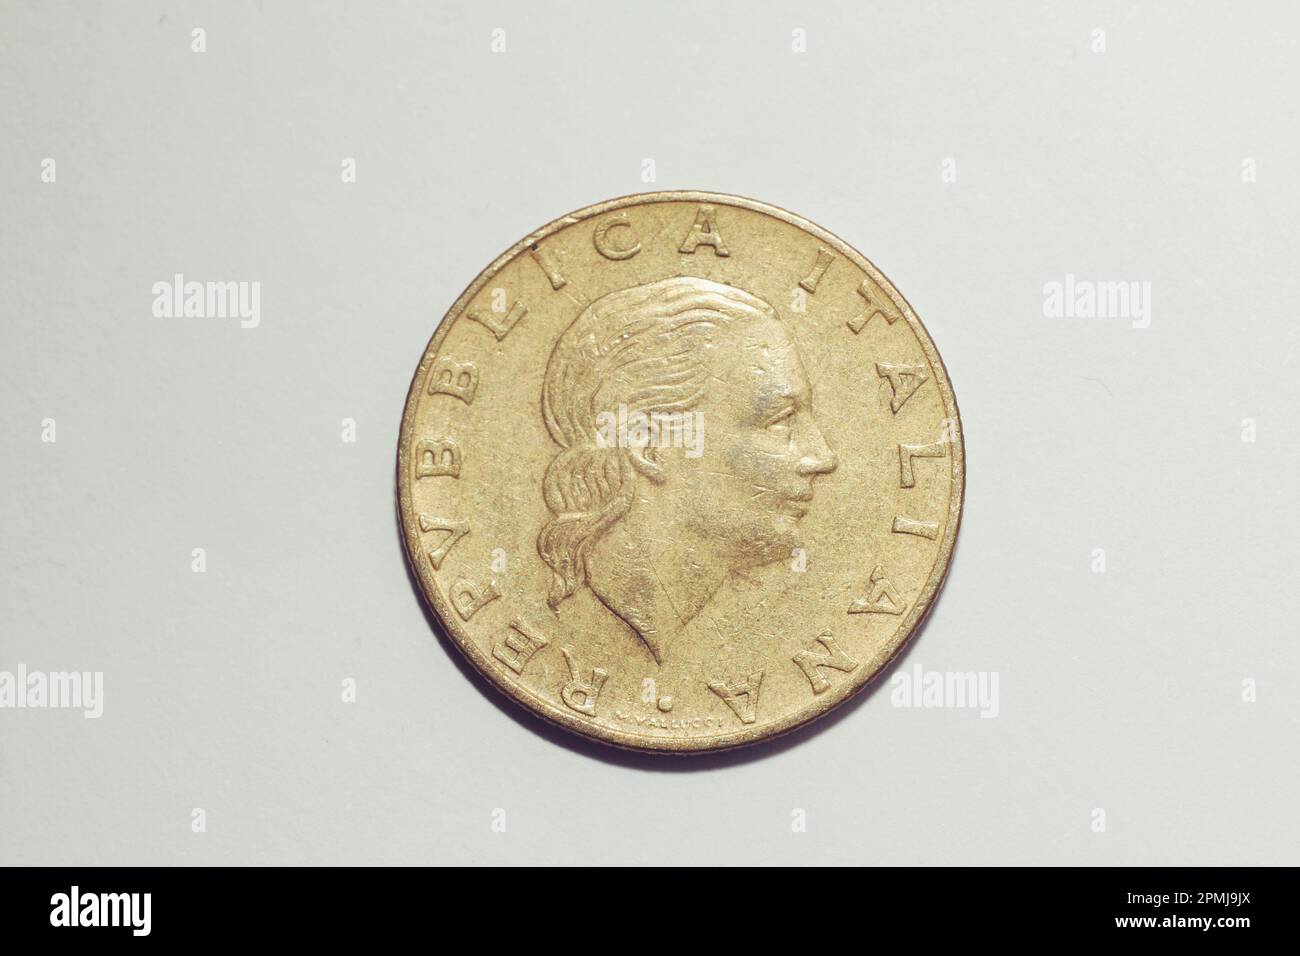 Pièce de 200 lires, pièce de monnaie italienne vintage. Banque D'Images